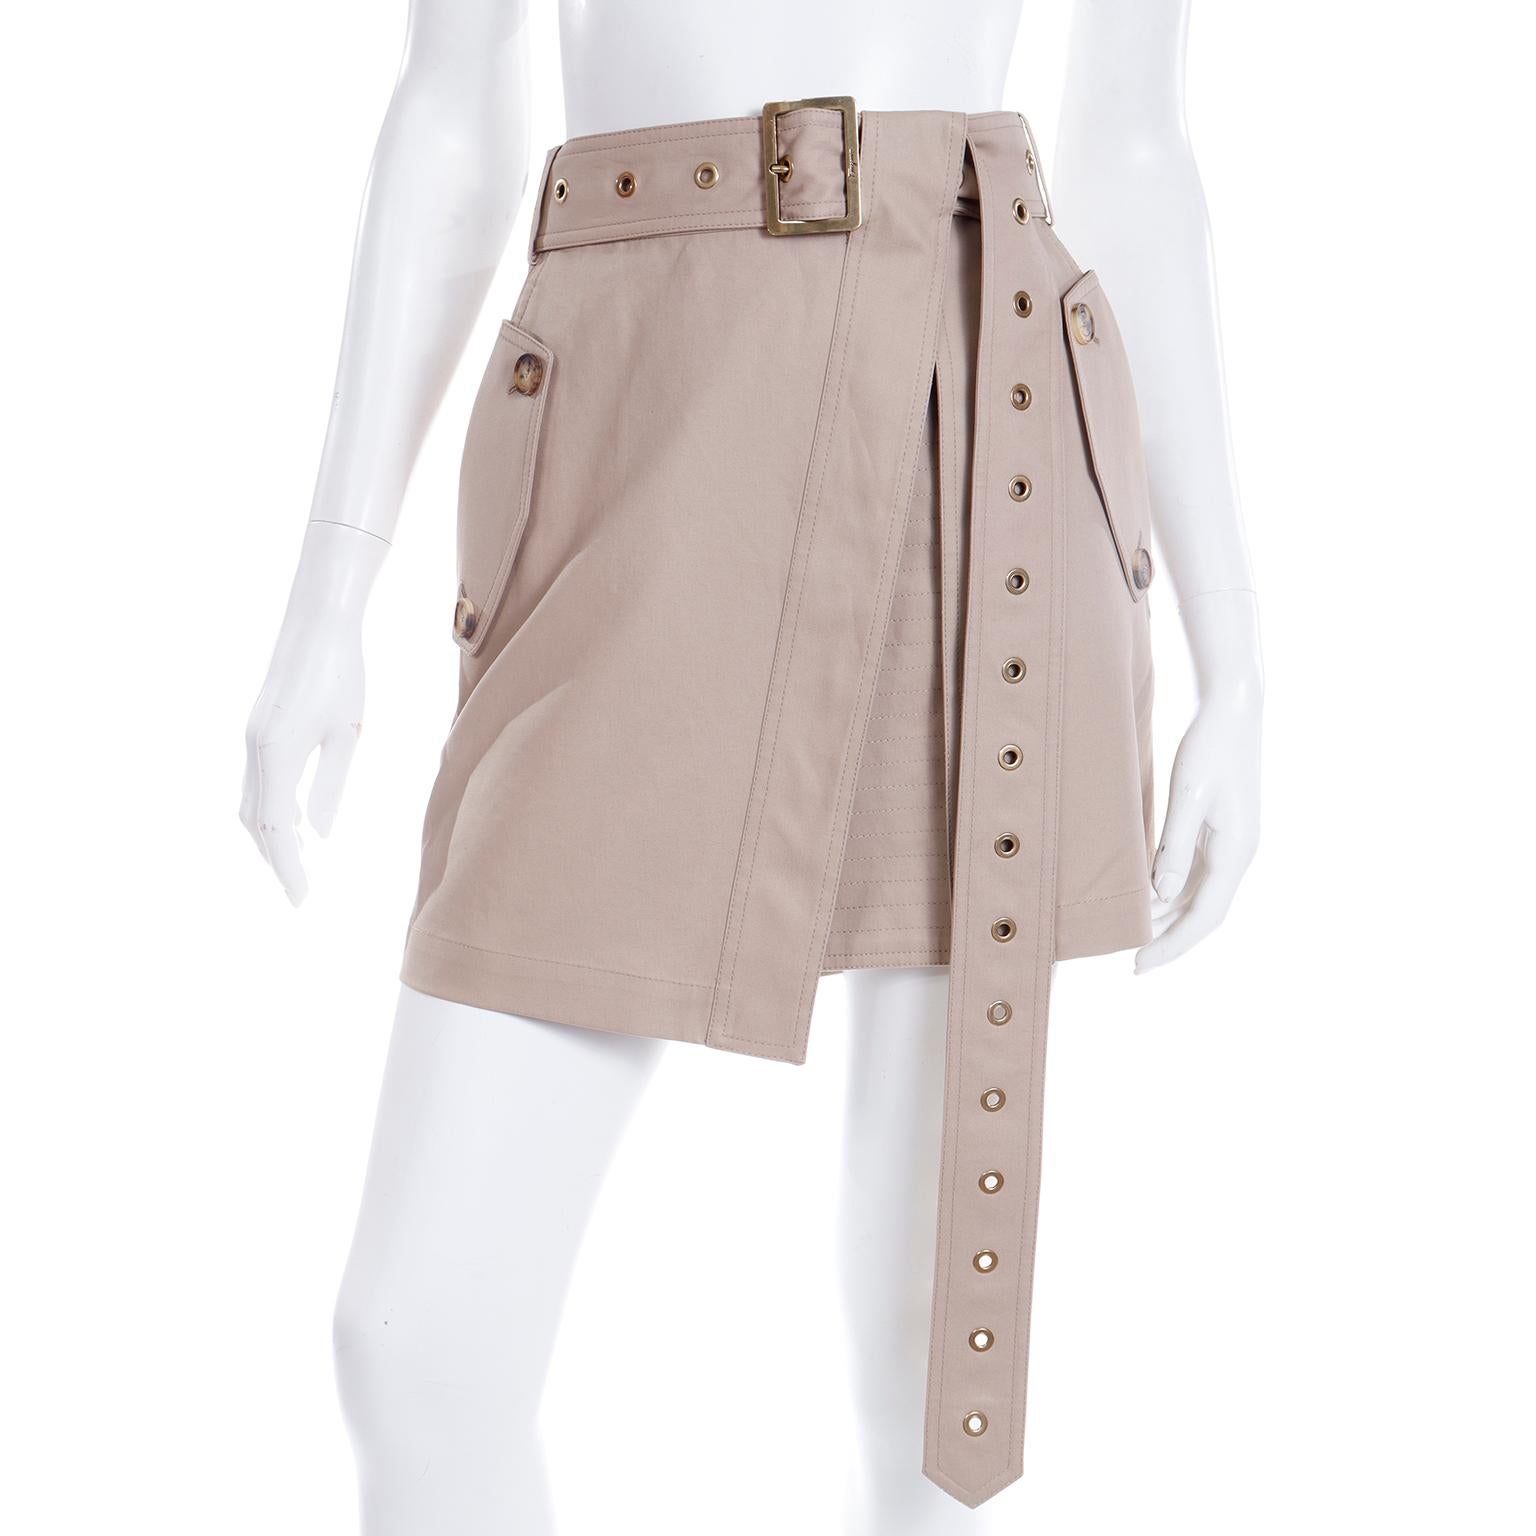 Vintage Salvatore Ferragamo Tan Jacket & Mini Skirt Suit Outfit with Belt 3